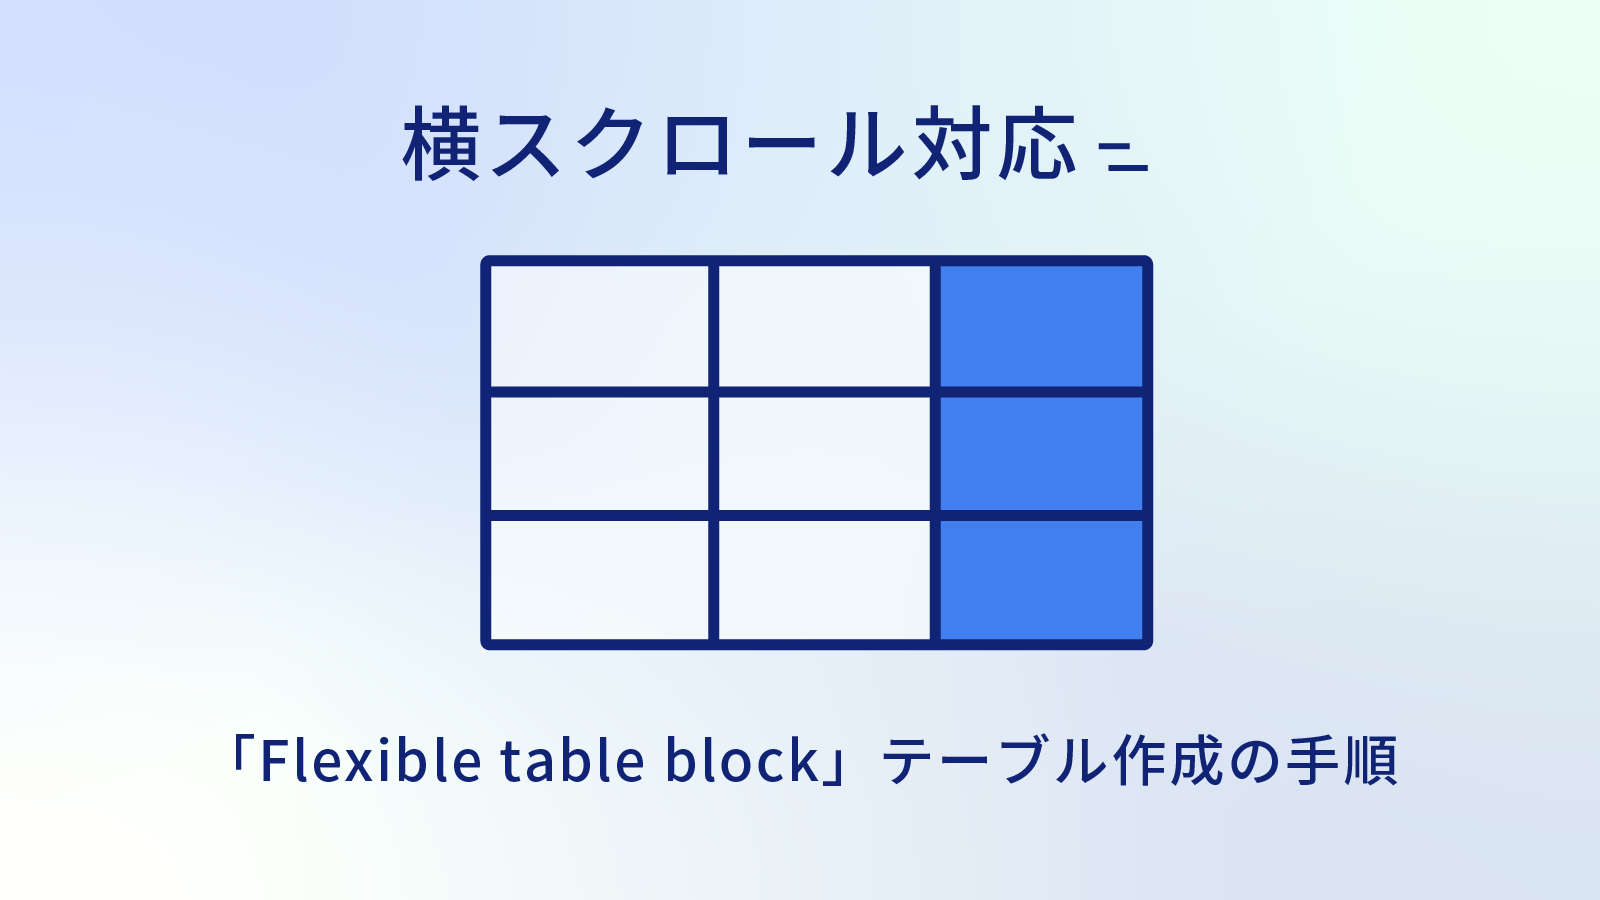 横スクロールできる表の作り方「flexible table box」でのテーブル作成手順